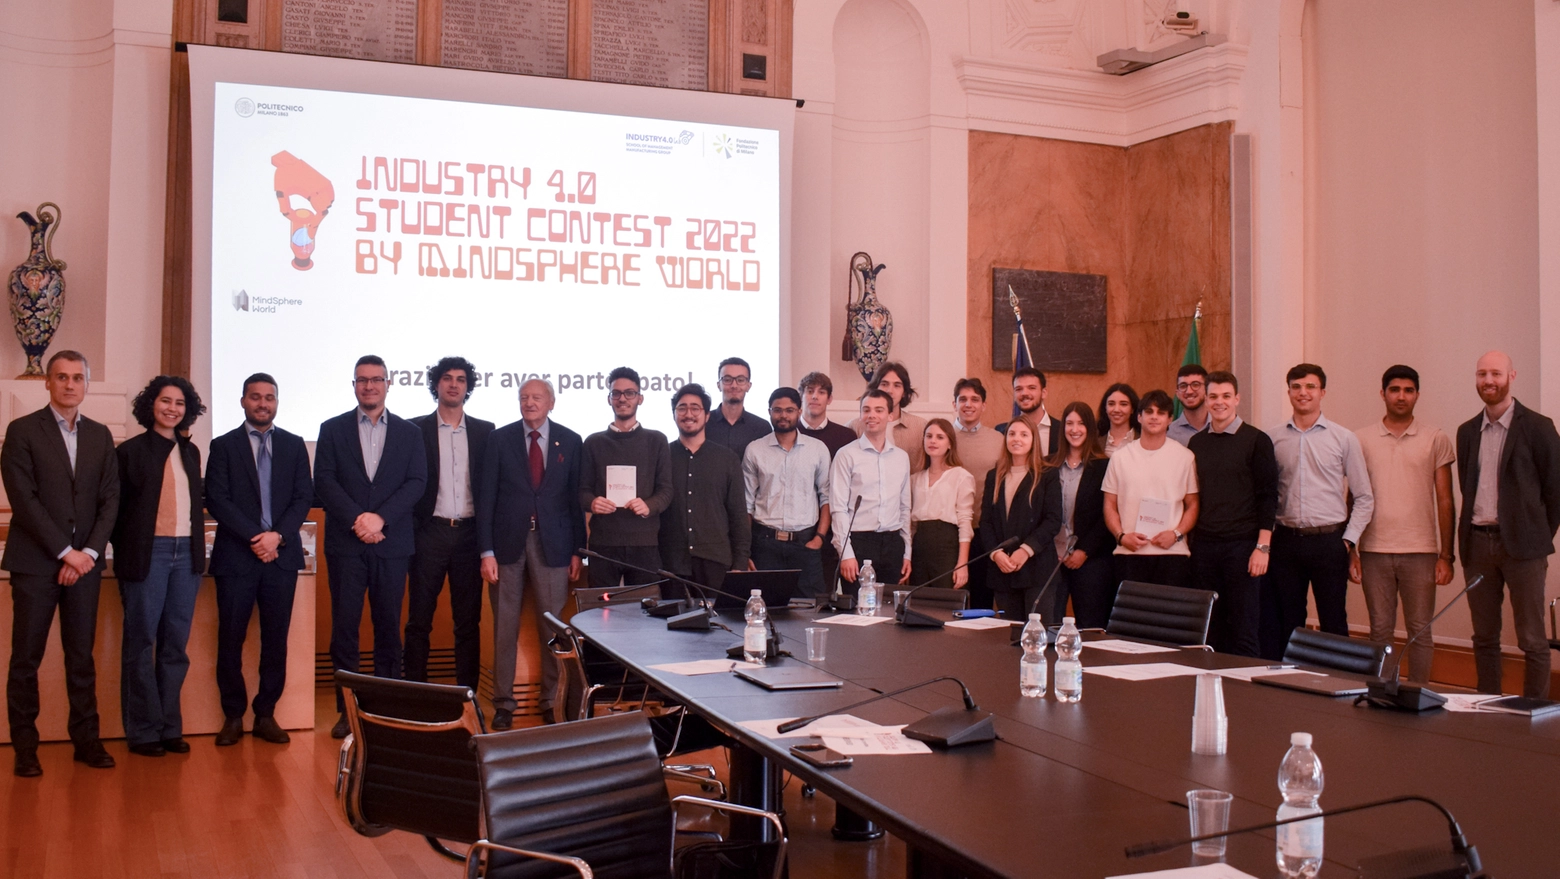 Digital Industries World, Fondazione Politecnico di Milano e Politecnico di Milano, insieme per stimolare gli studenti a sviluppare soluzioni innovative